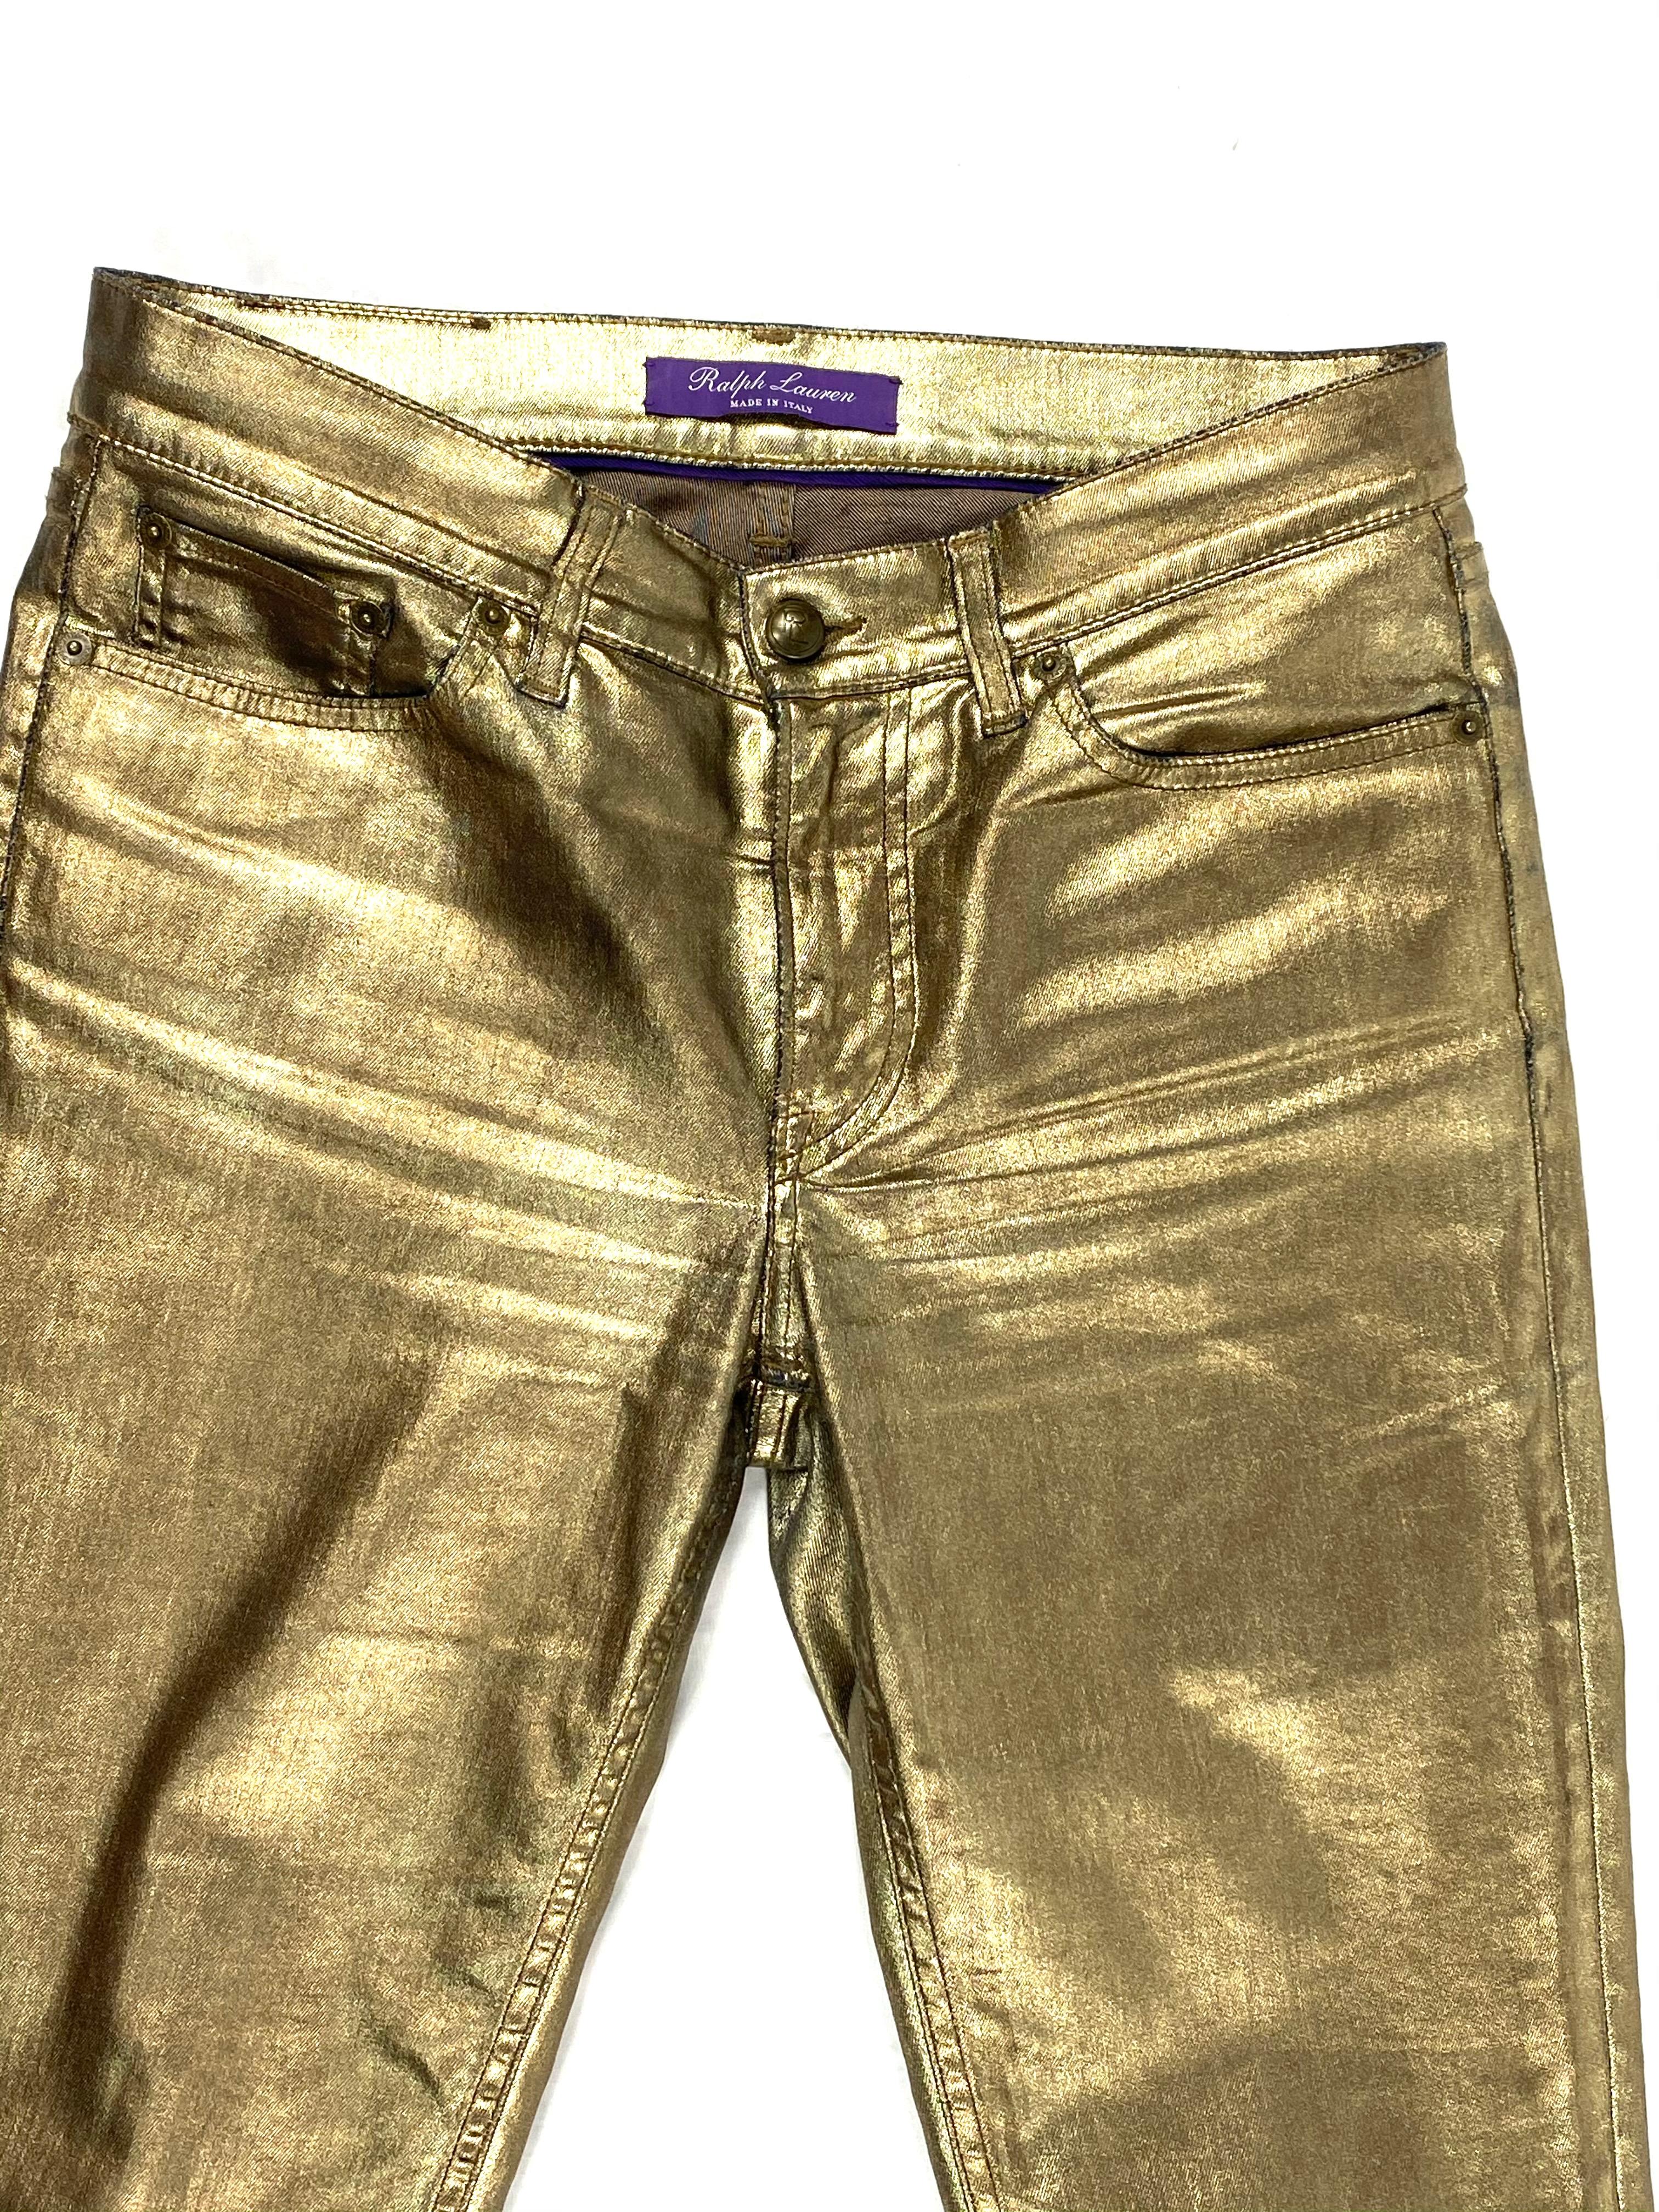 Einzelheiten zum Produkt:

Mit goldfarben beschichteten Stretch-Jeans in Skinny-Fit.